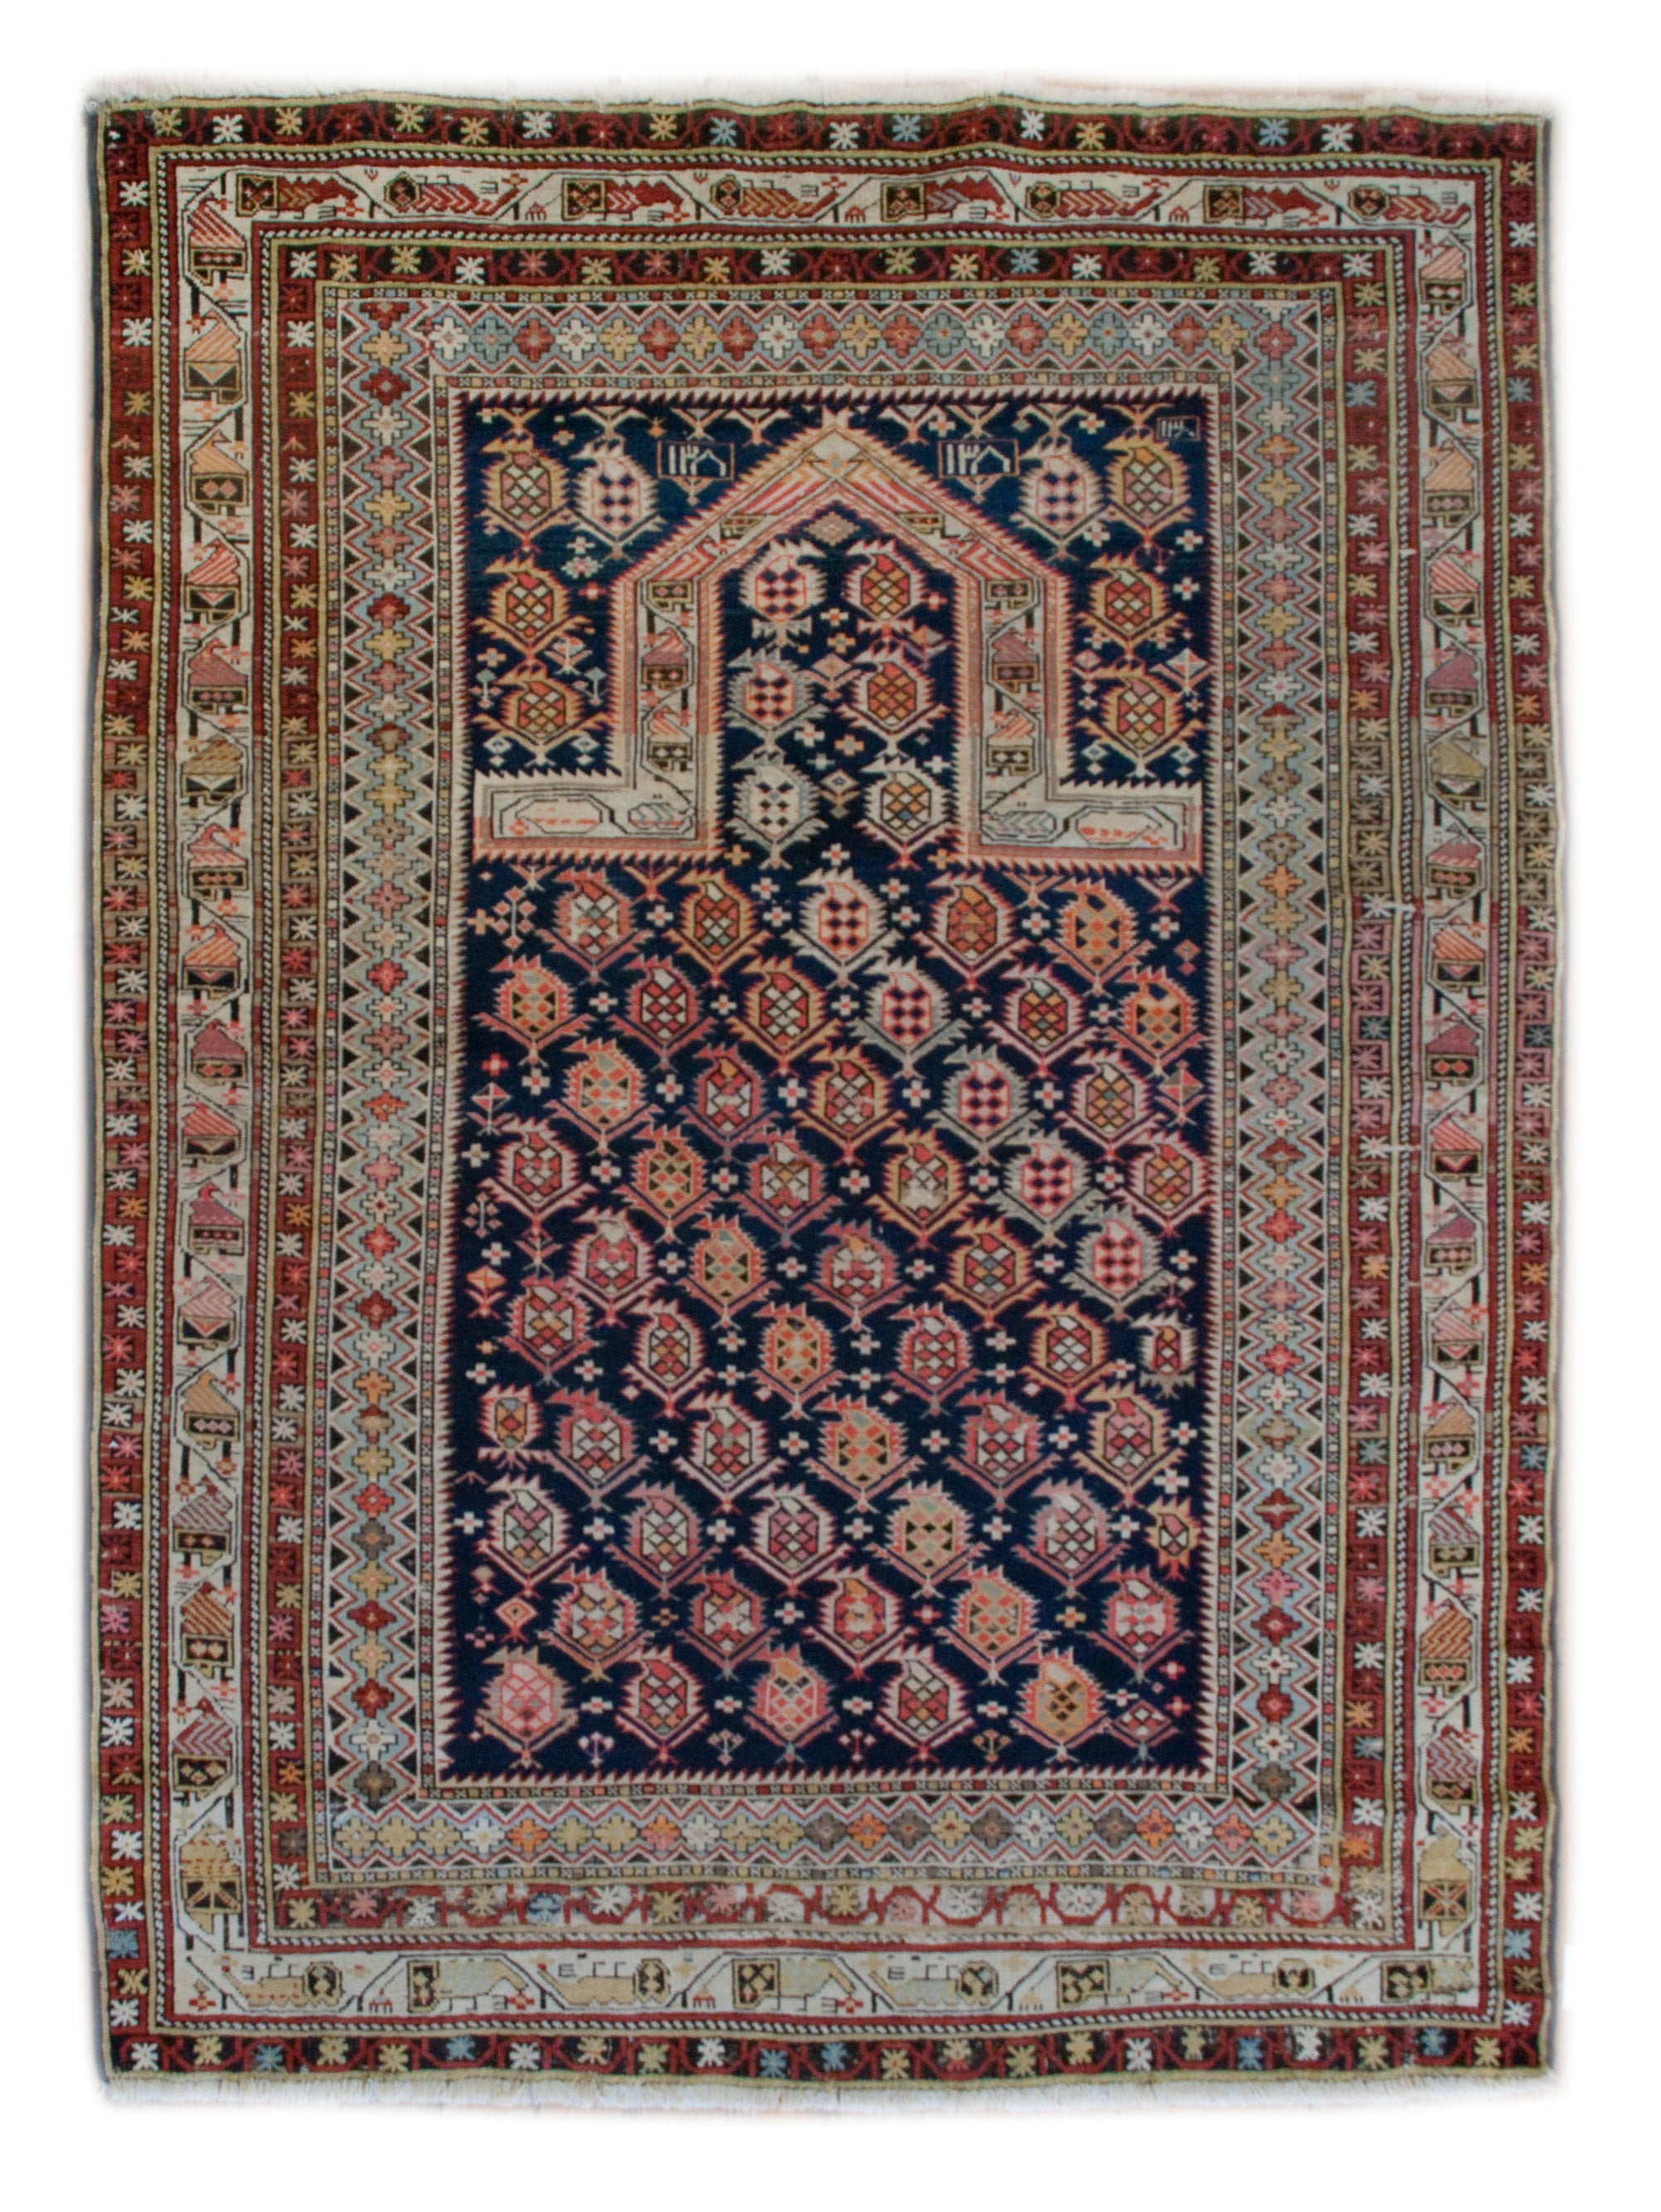 Schirwan-Gebetteppich aus dem späten 19. Jahrhundert